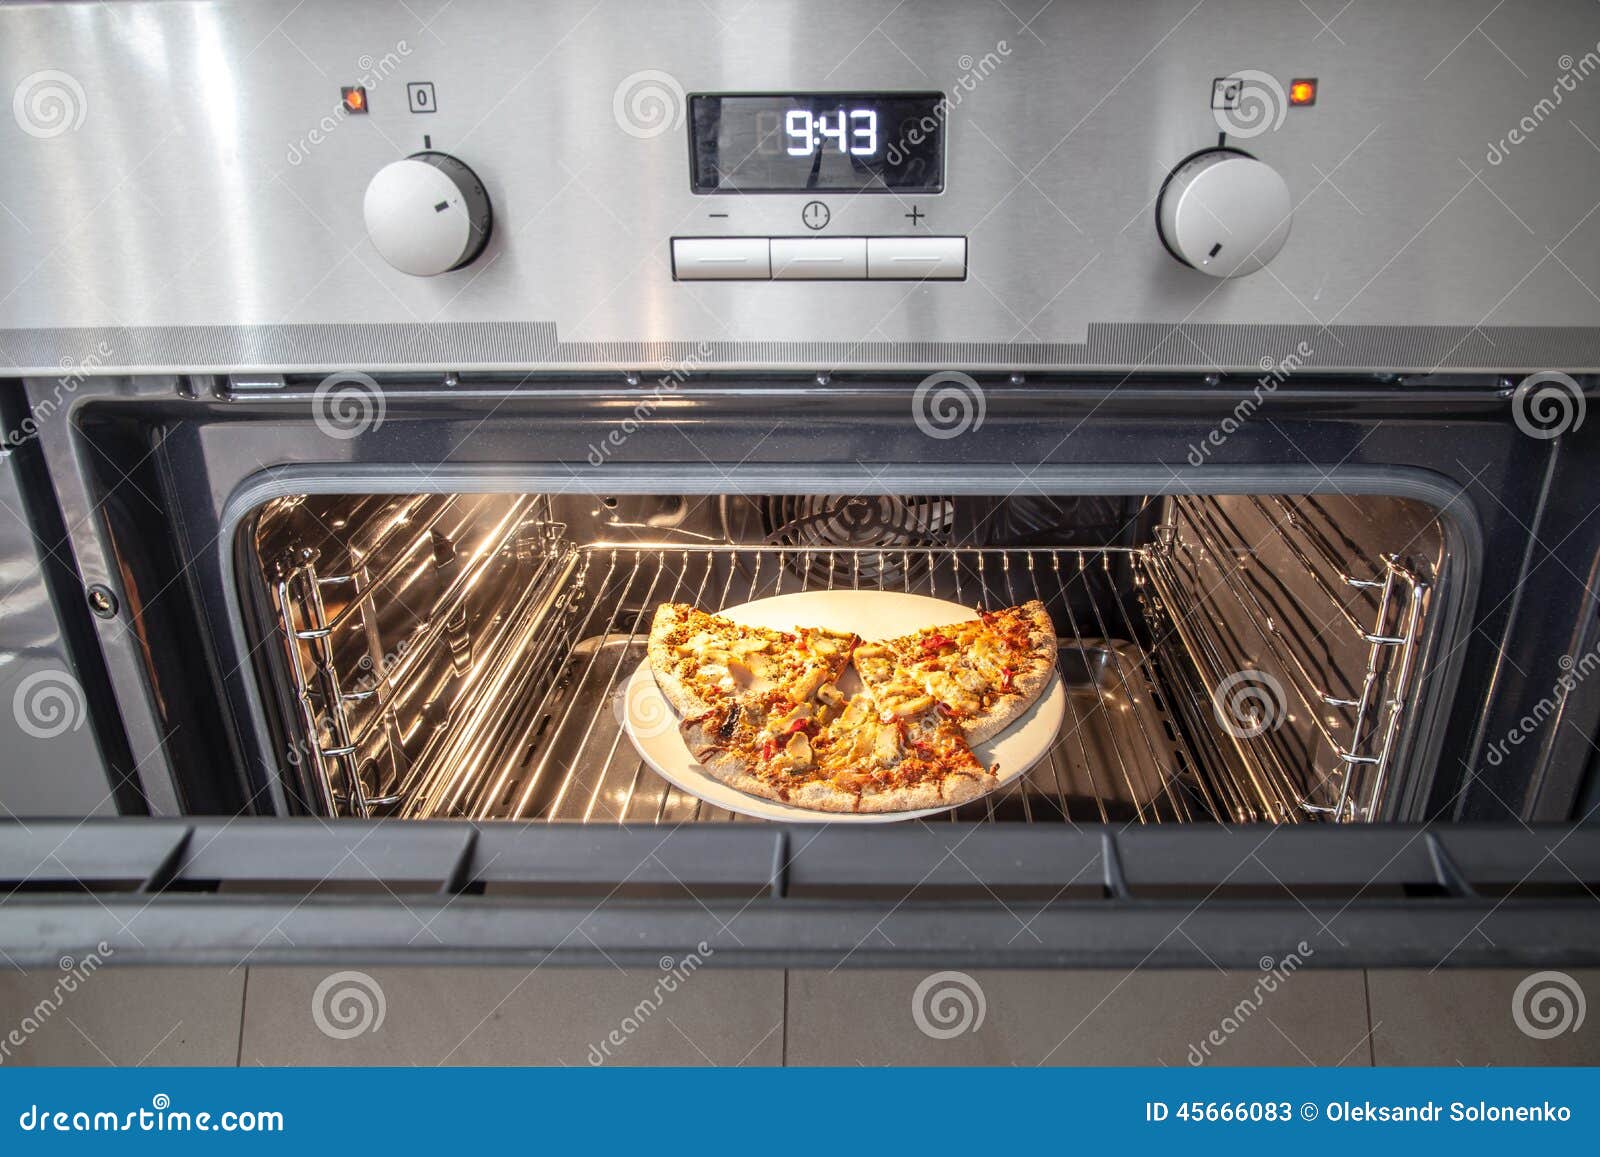 бош режим для пиццы в духовке фото 88